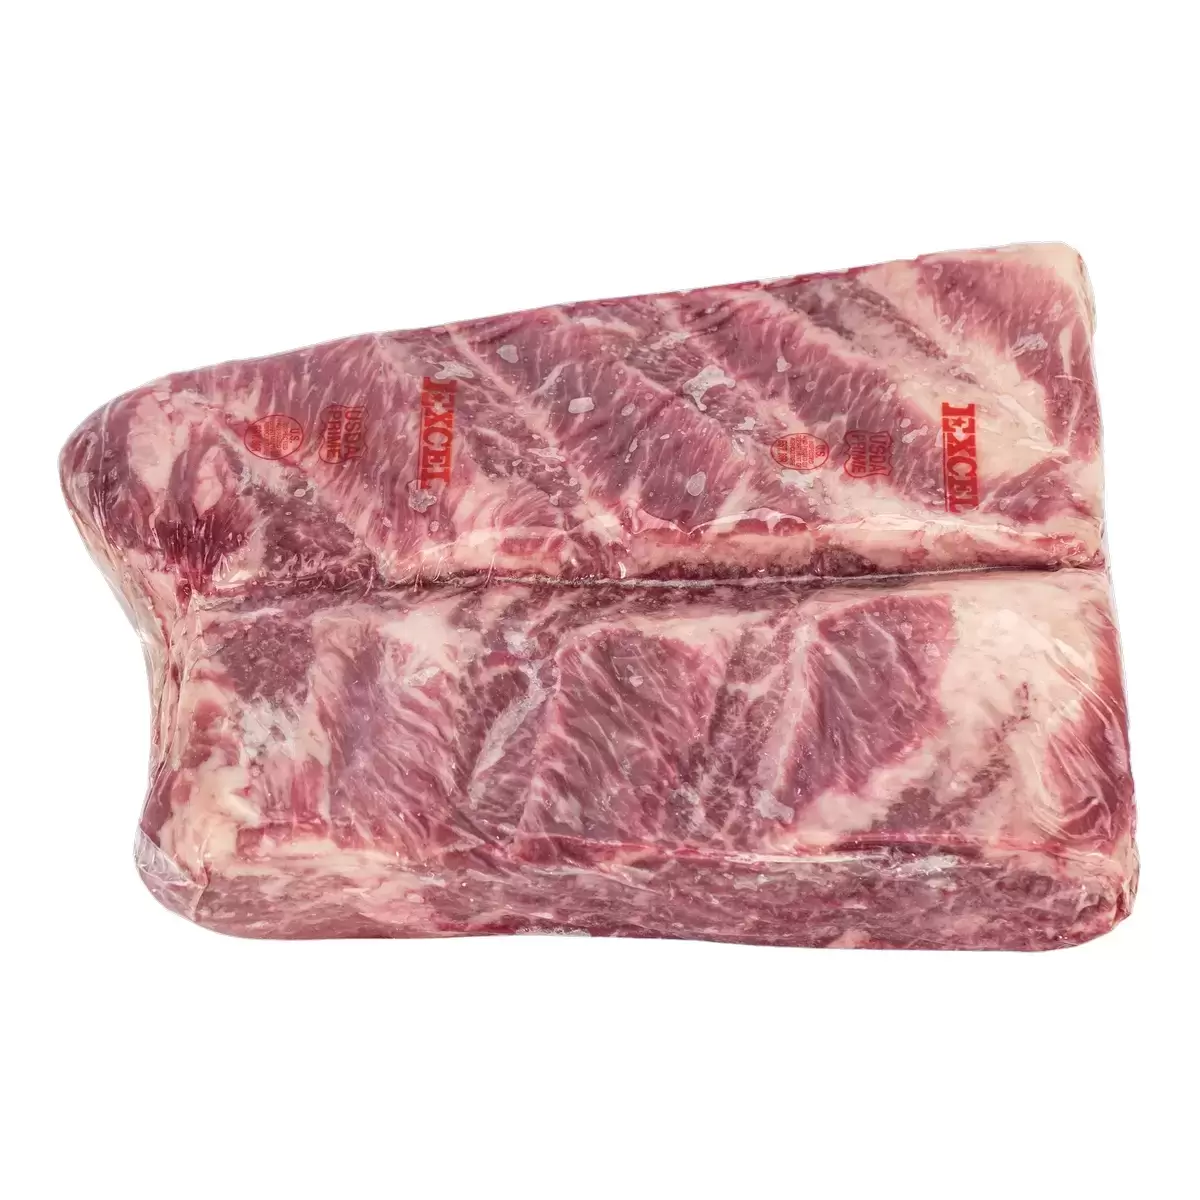 美國頂級冷凍翼板肉 23公斤 / 箱